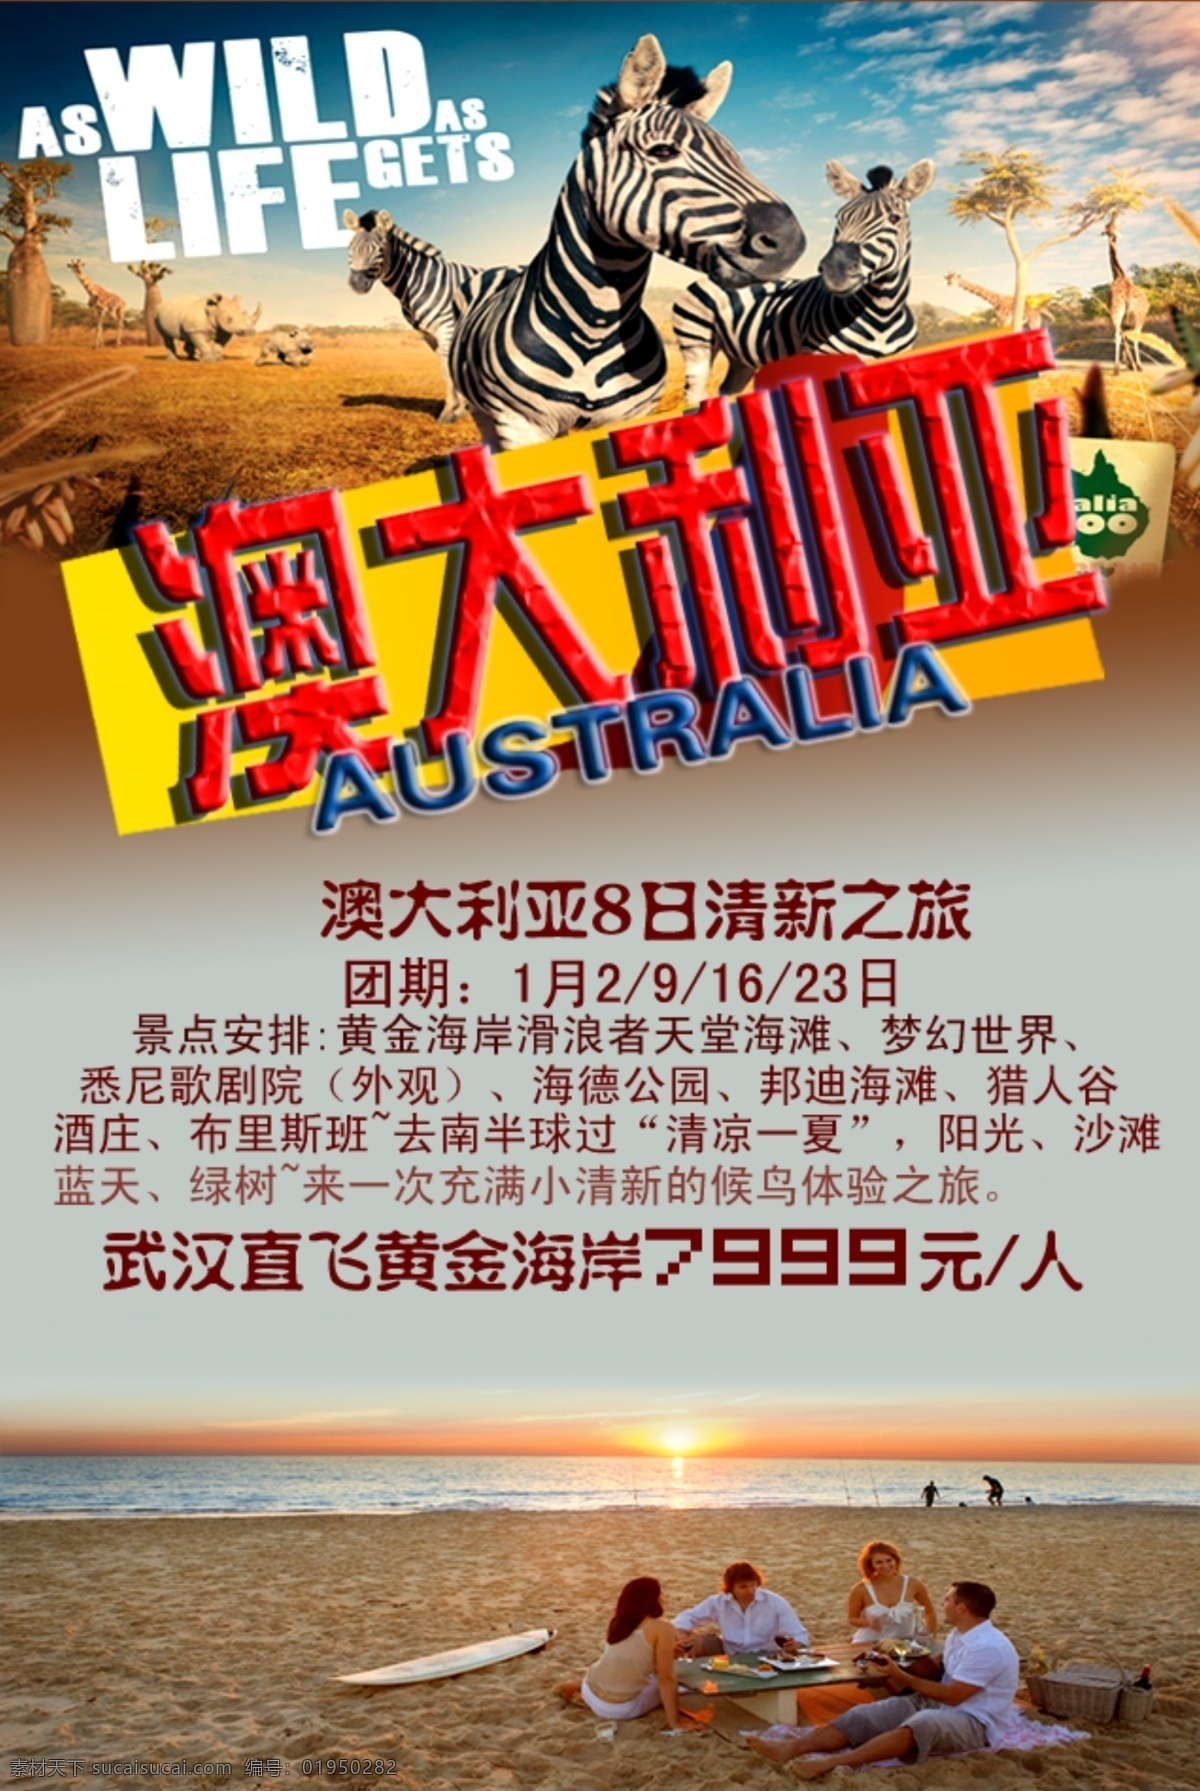 澳大利亚旅游 澳大利亚 旅游图 海报 动物 灰色